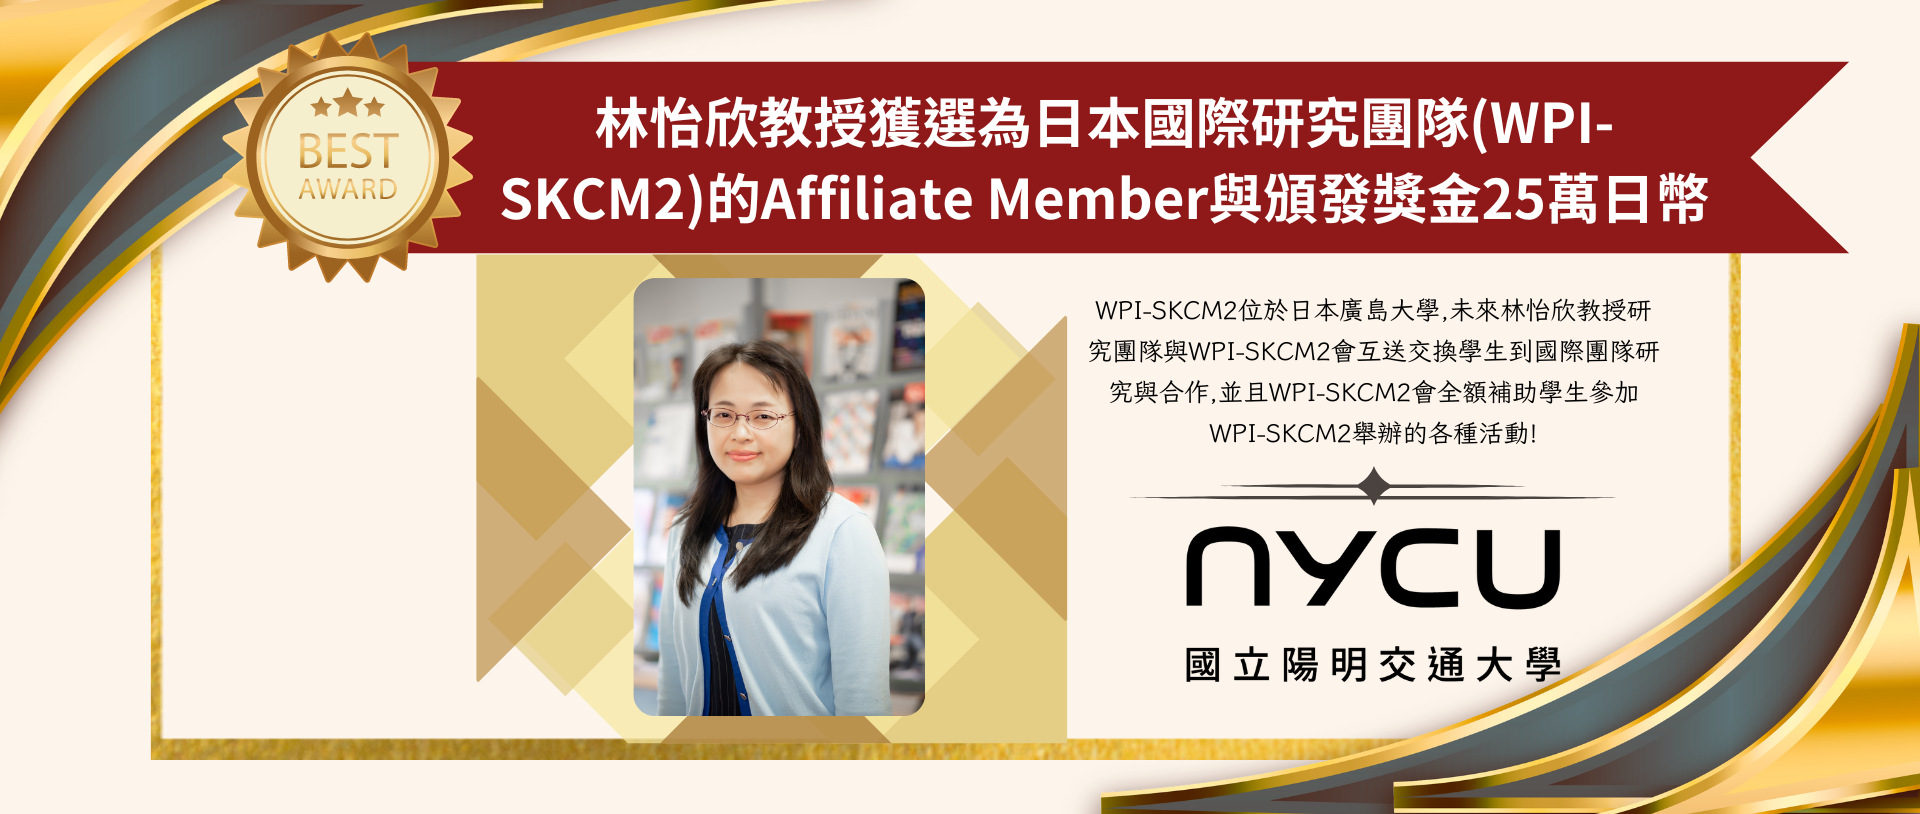 林怡欣教授獲選為日本國際研究團隊(WPI-SKCM2)的Affiliate Member與頒發獎金25萬日幣